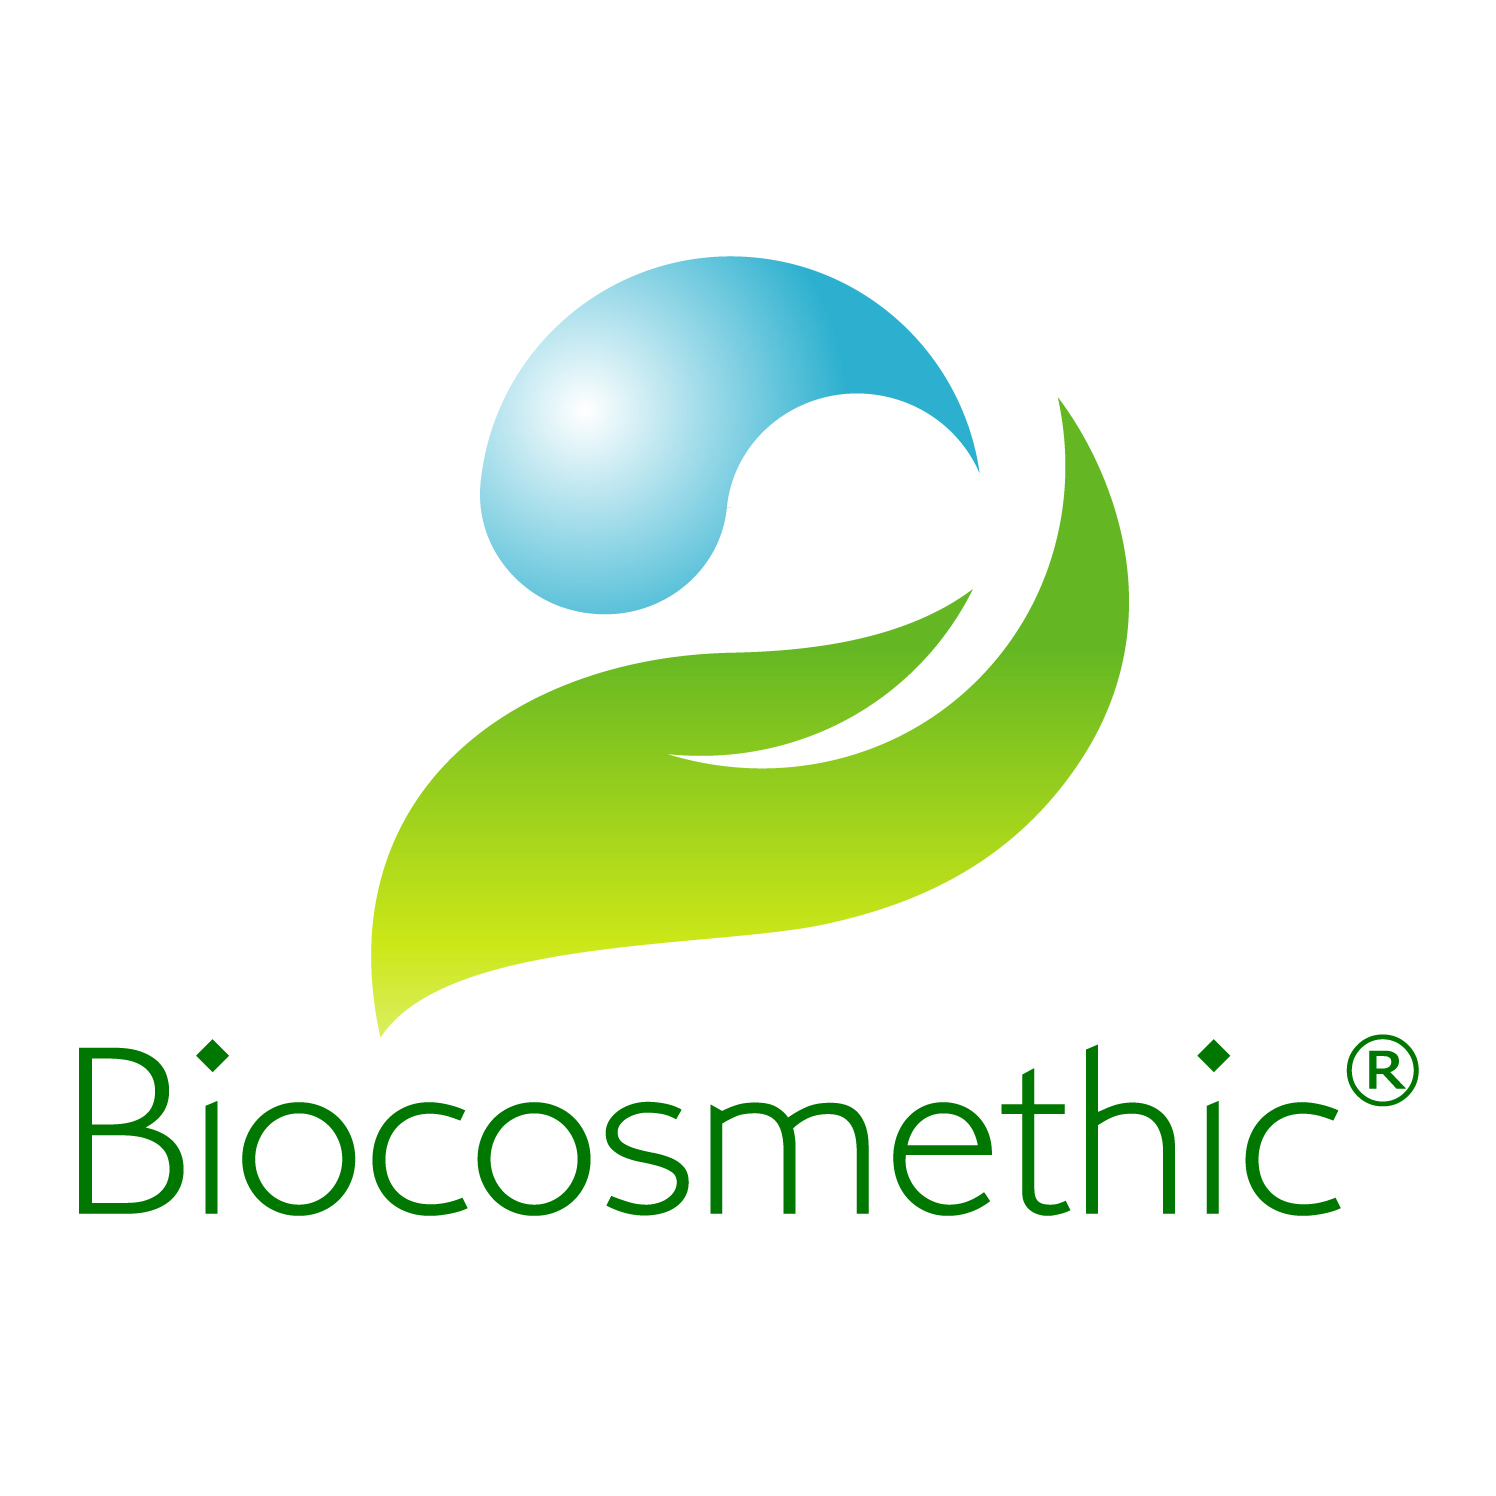 Biocosmethic